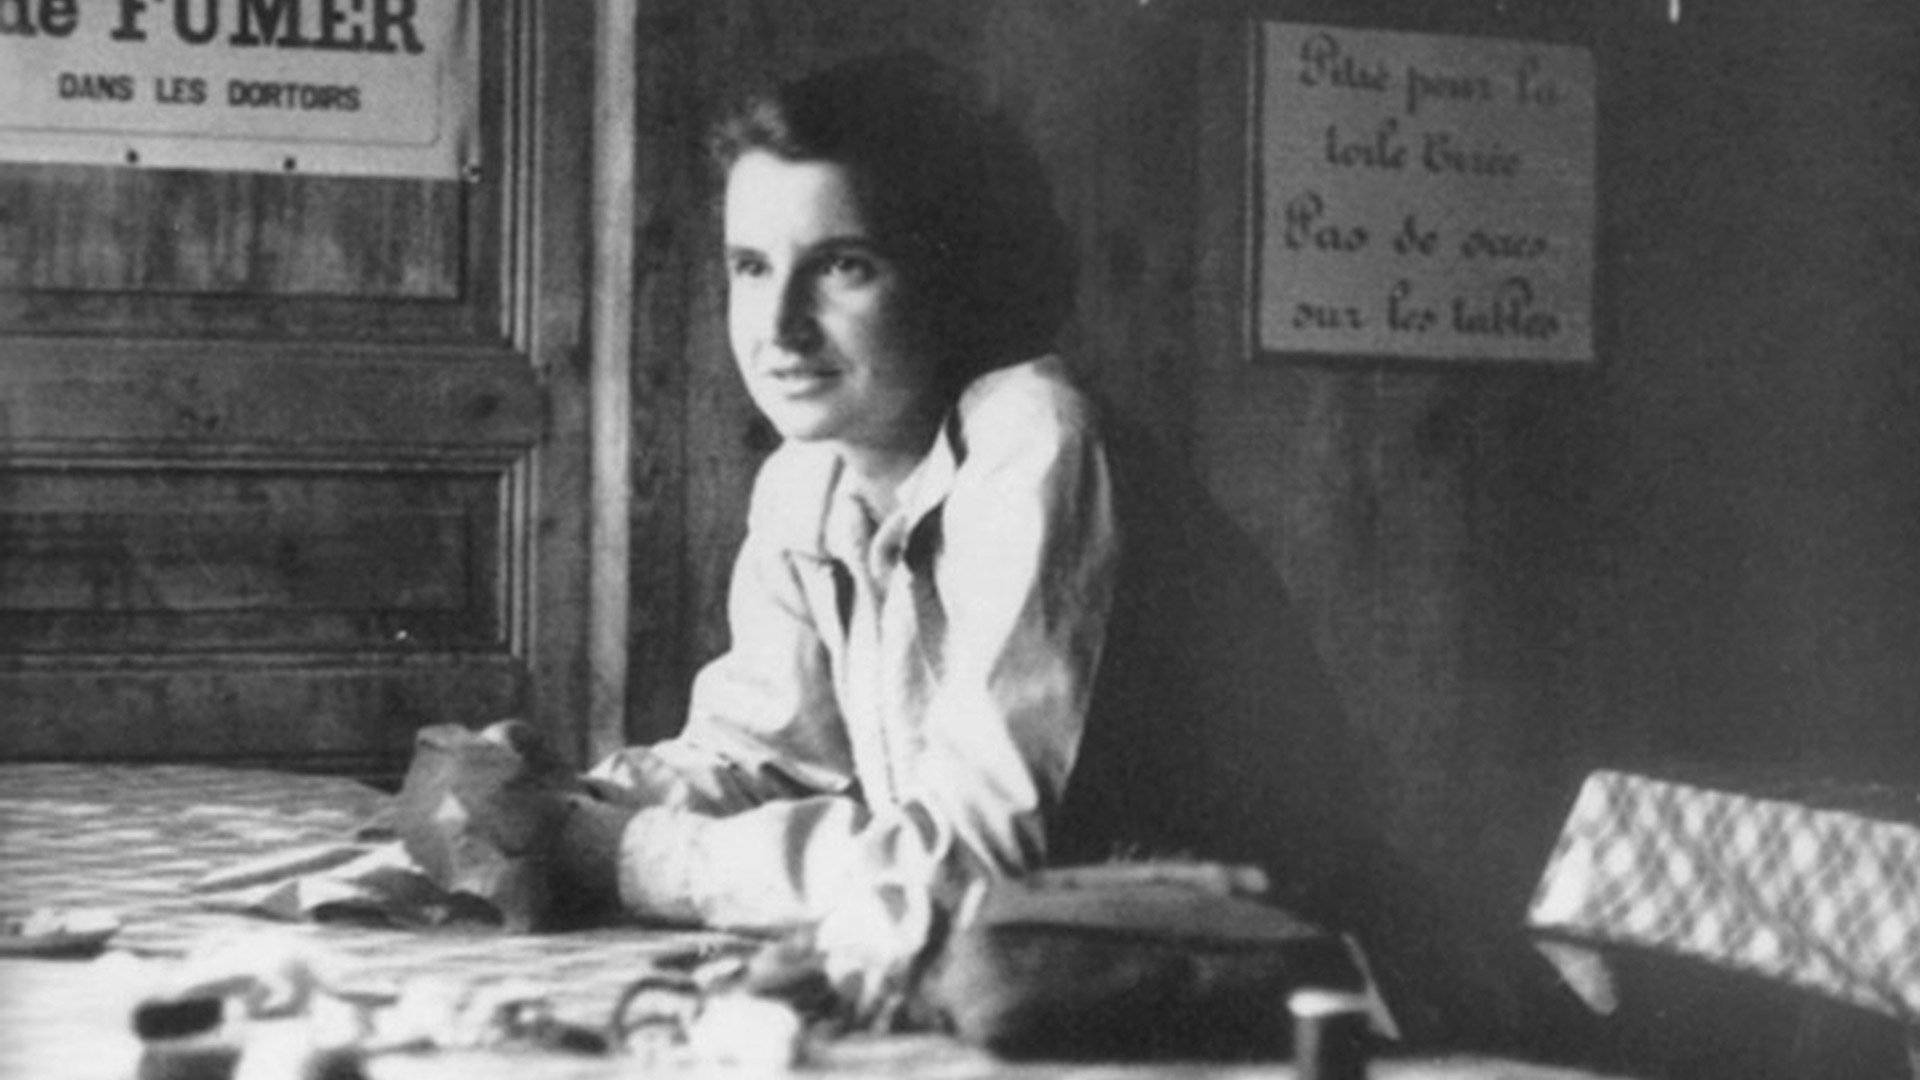 Rosalind Franklin et les héroïnes méconnues de la génétique : Célébrer les contributions des femmes à la science 1